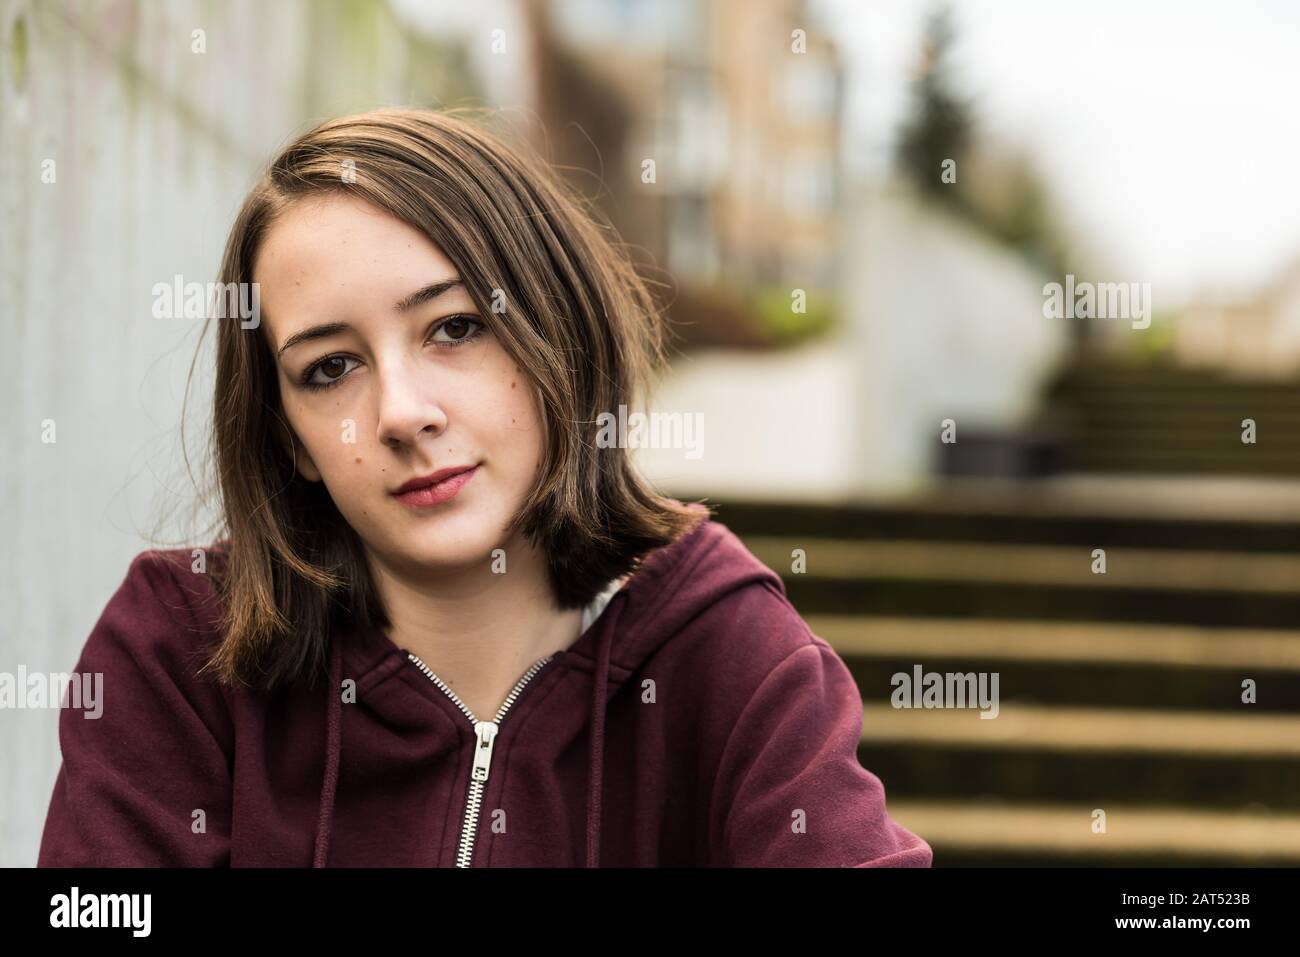 Retrato de una niña universitaria de 17 años sentada en el entrenamiento en una escalera Foto de stock